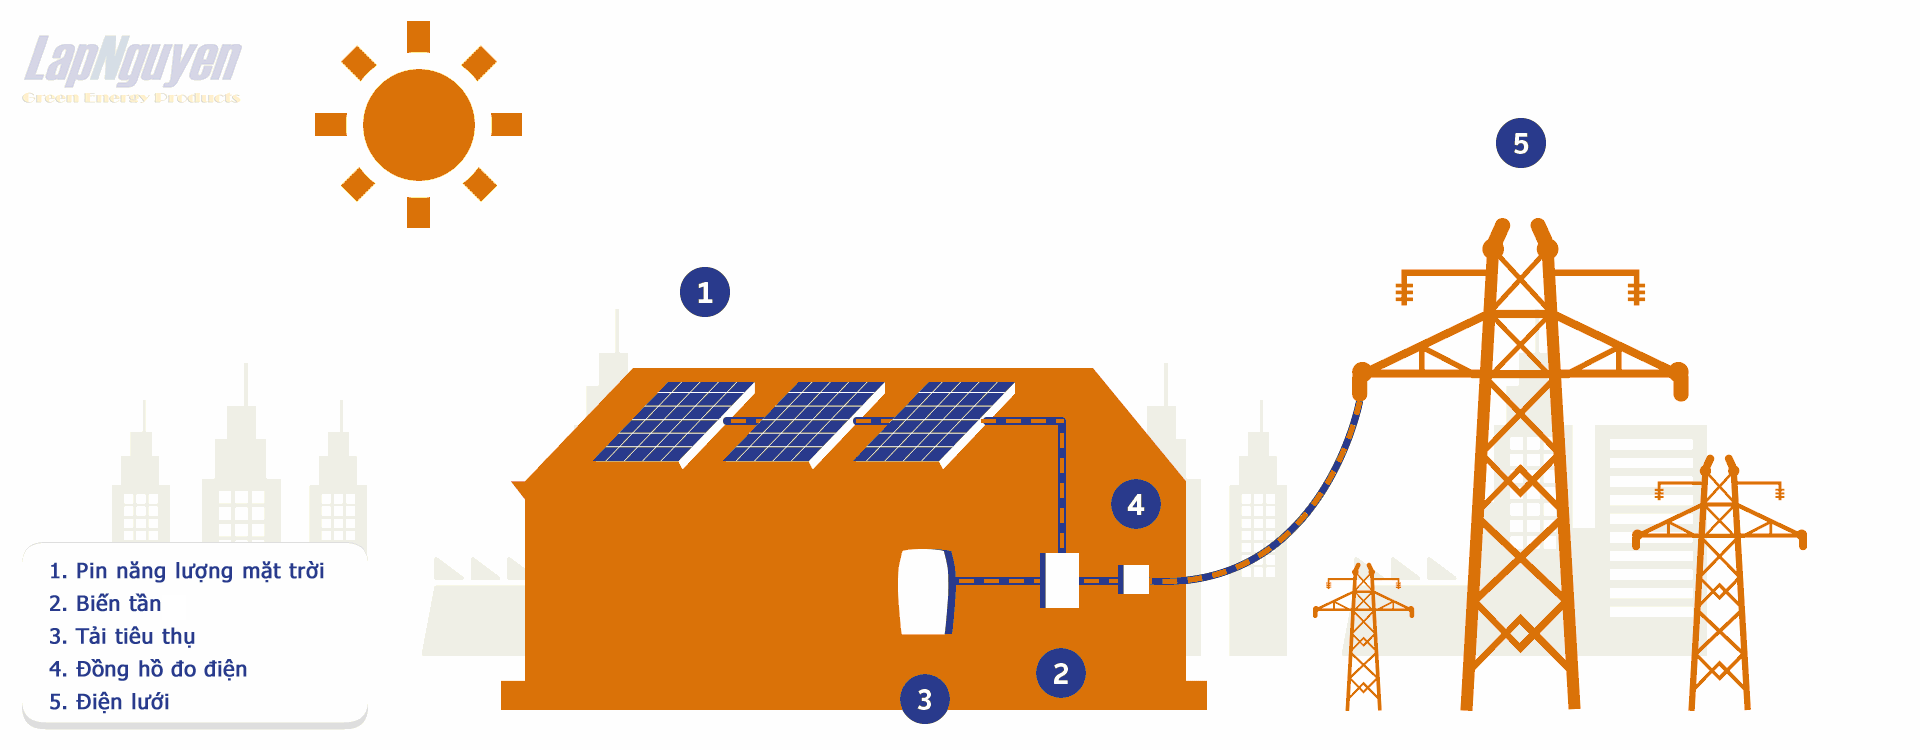 Hệ thống điện mặt trời hoạt động thế nào?